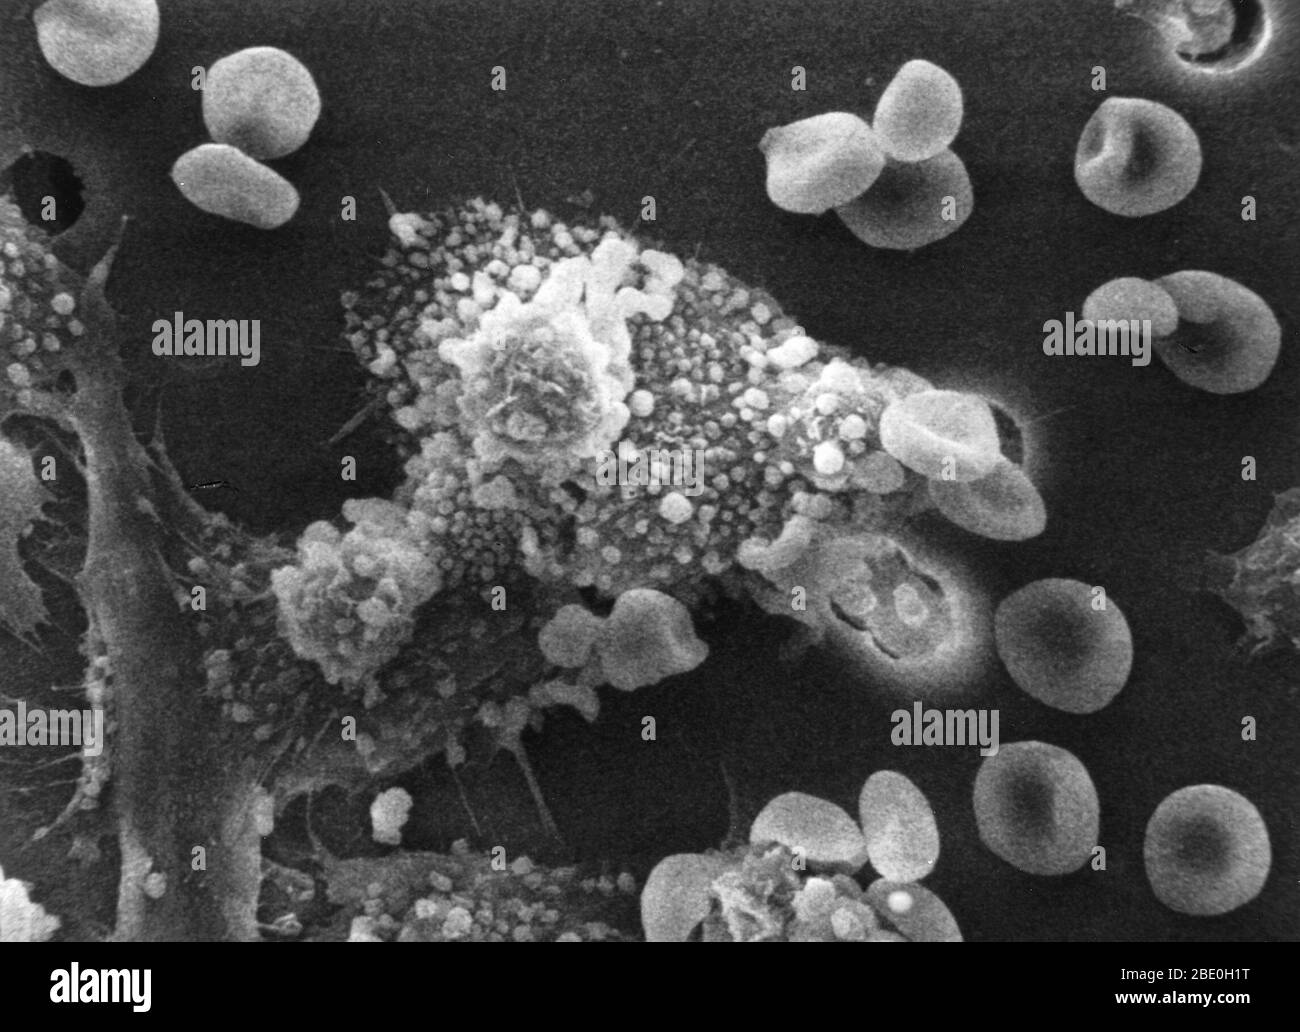 Schritt drei einer sechs-Schritte-Sequenz des Todes einer Krebszelle. Makrophagen beginnen, mit der Krebszelle zu verschmelzen und ihre Giftstoffe in sie einzuspritzen. Die Zelle beginnt zu runden und verliert ihre Spitzen. Fotovergrößerung: 8000x Stockfoto